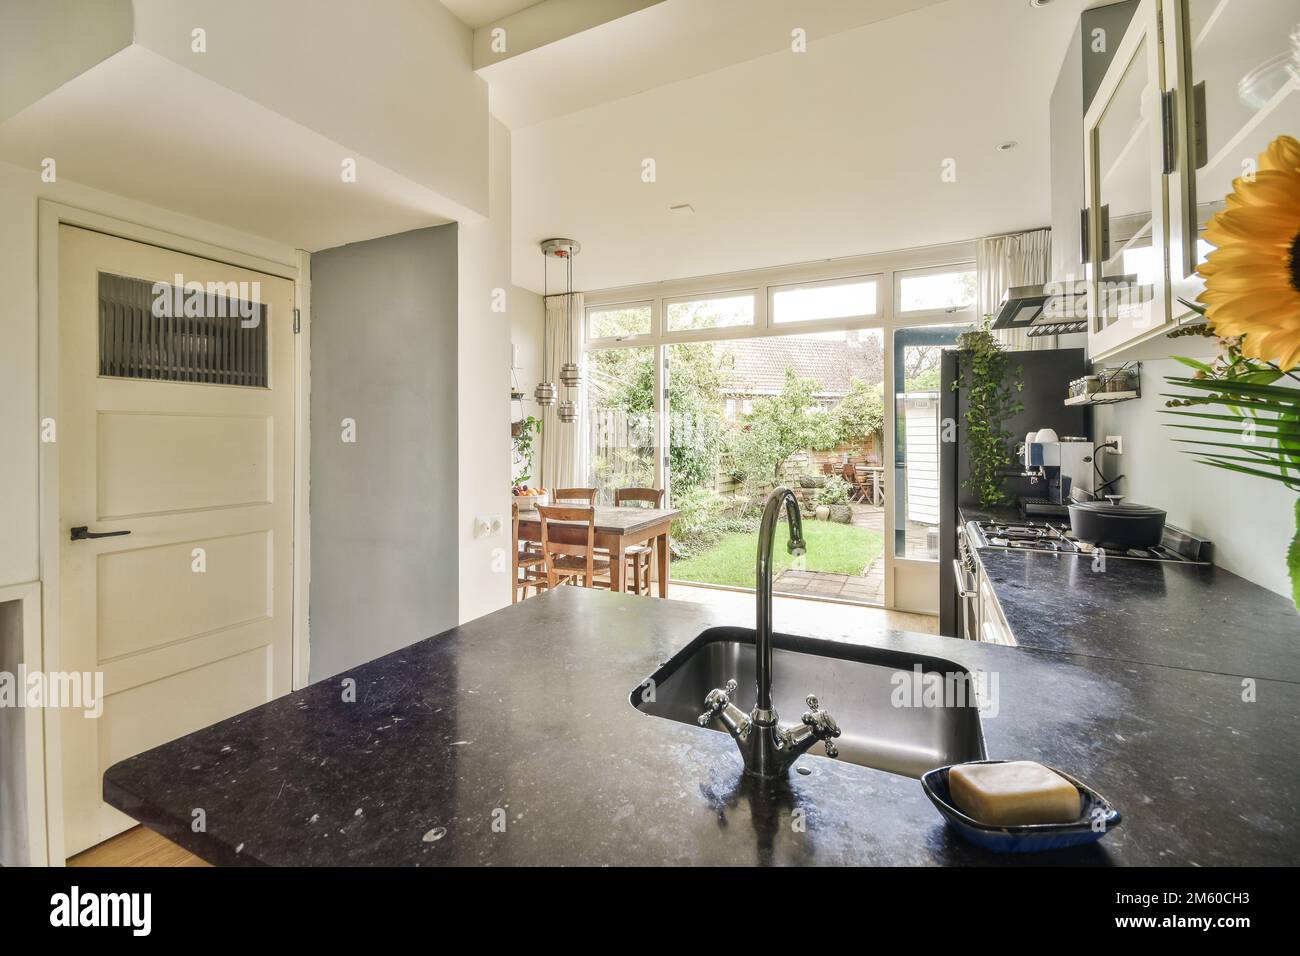 une cuisine et salle à manger dans une maison avec une porte ouverte menant à la terrasse extérieure, il y a un comptoir en granit noir Banque D'Images